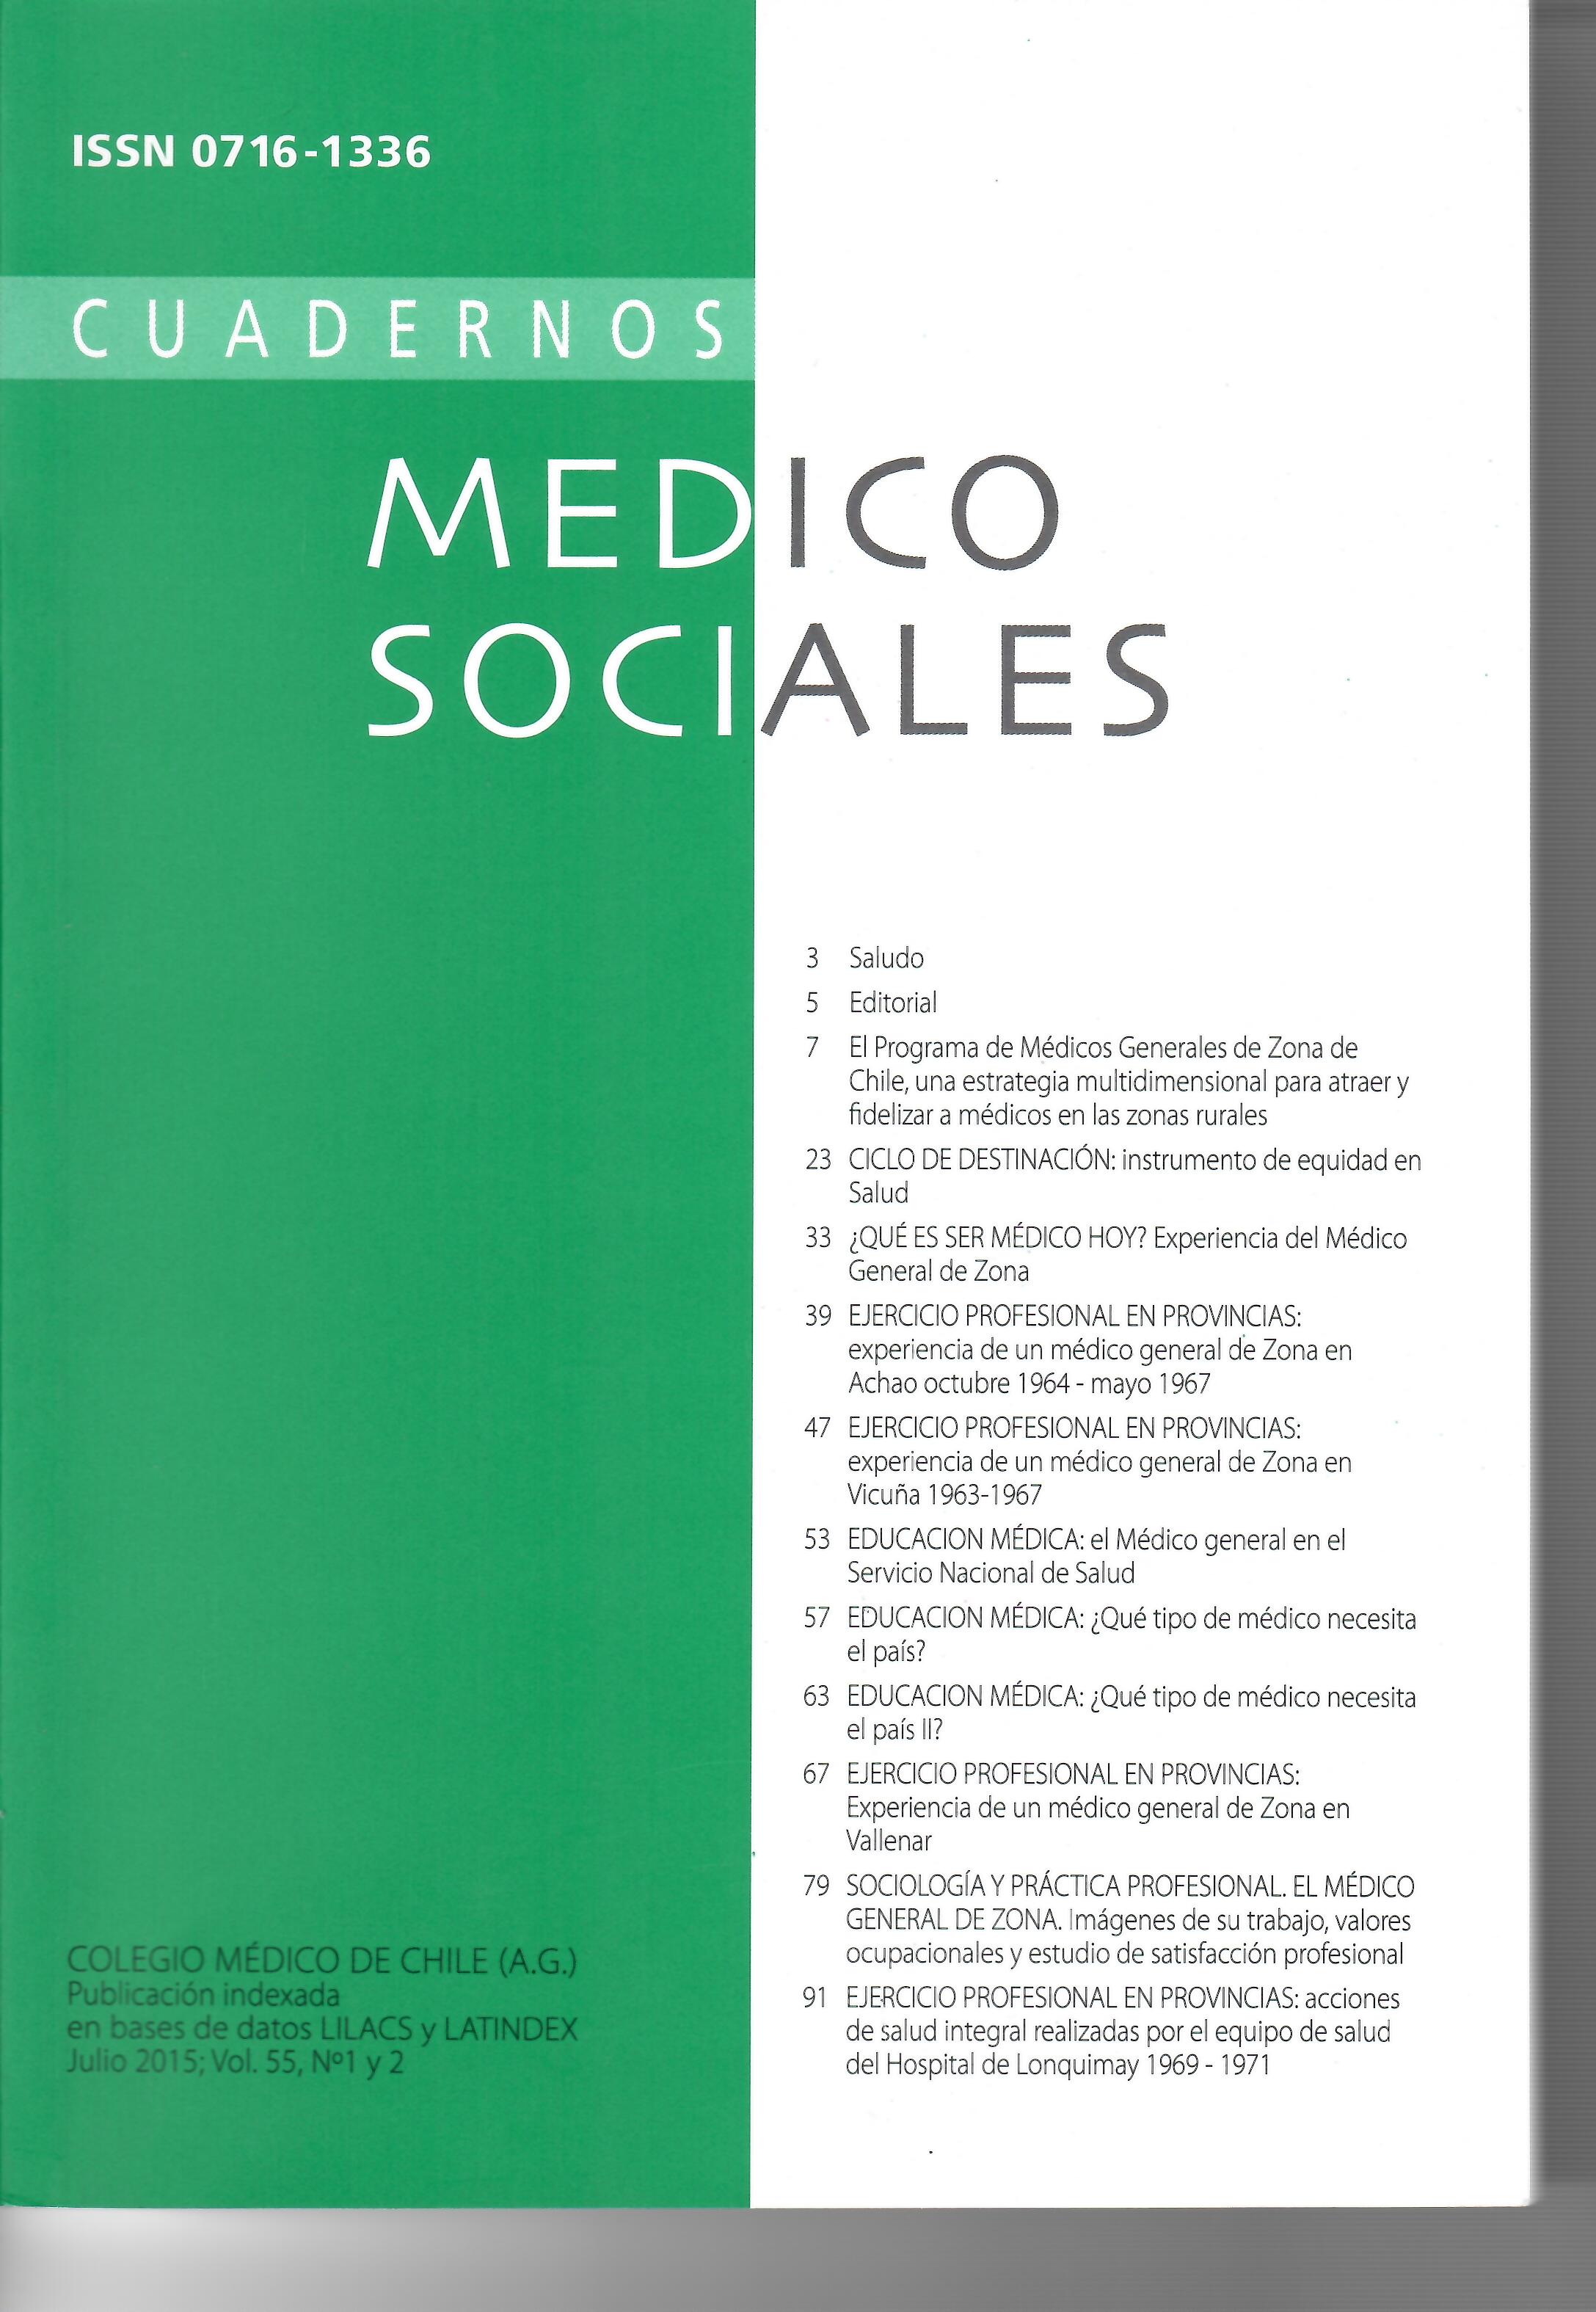 					Ver Vol. 55 Núm. 1-2 (2015): Cuadernos Médico Sociales
				